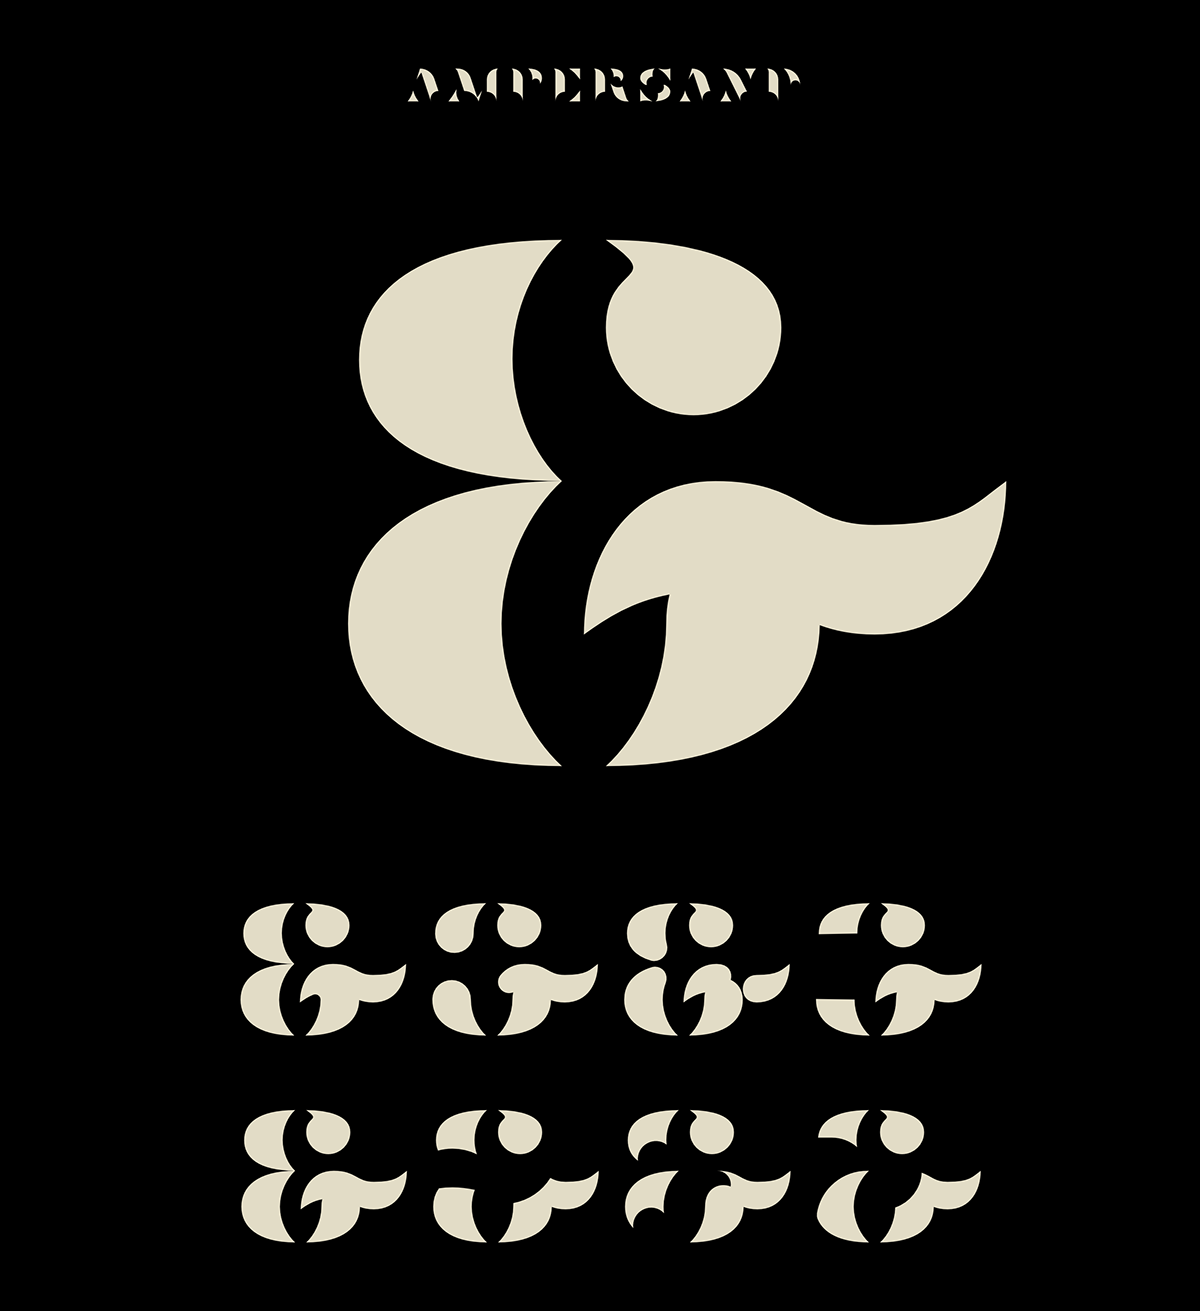 Zephyr font